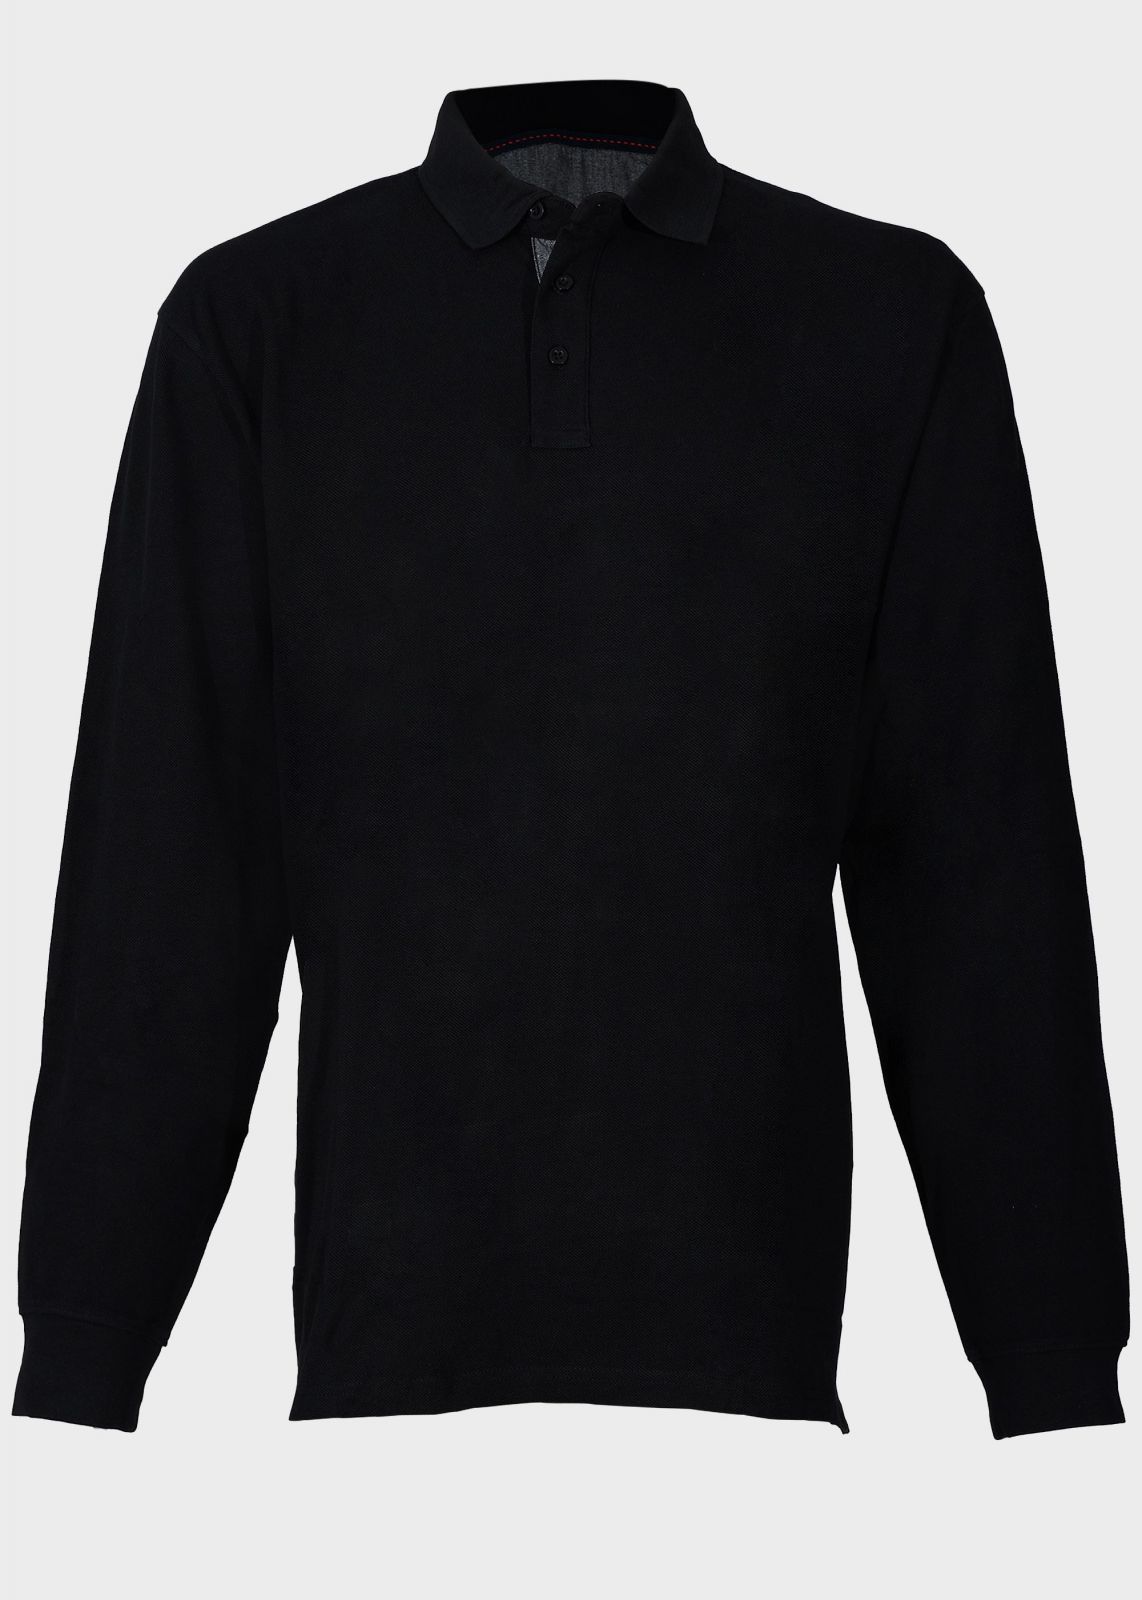 Ανδρική μπλούζα τύπου polo μονόχρωμη μακρύ μανίκι.Oversize Collection ΜΑΥΡΟ